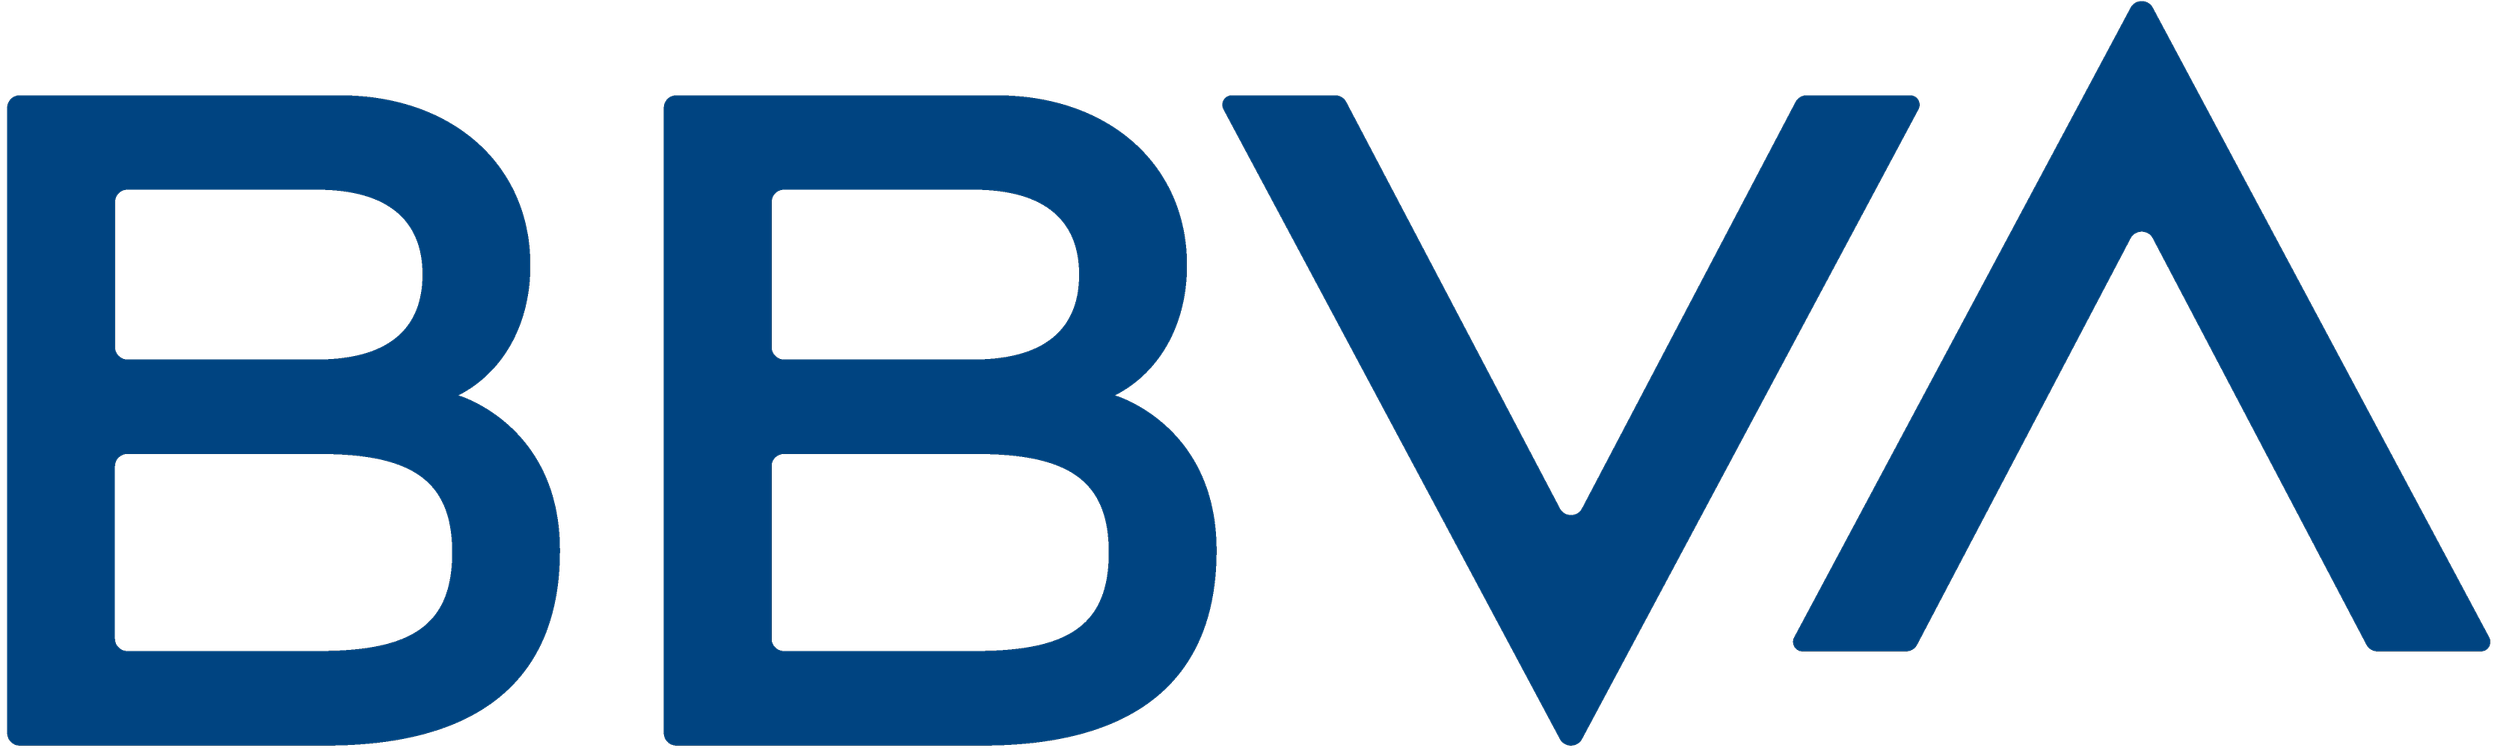 bbva logo-amp.png